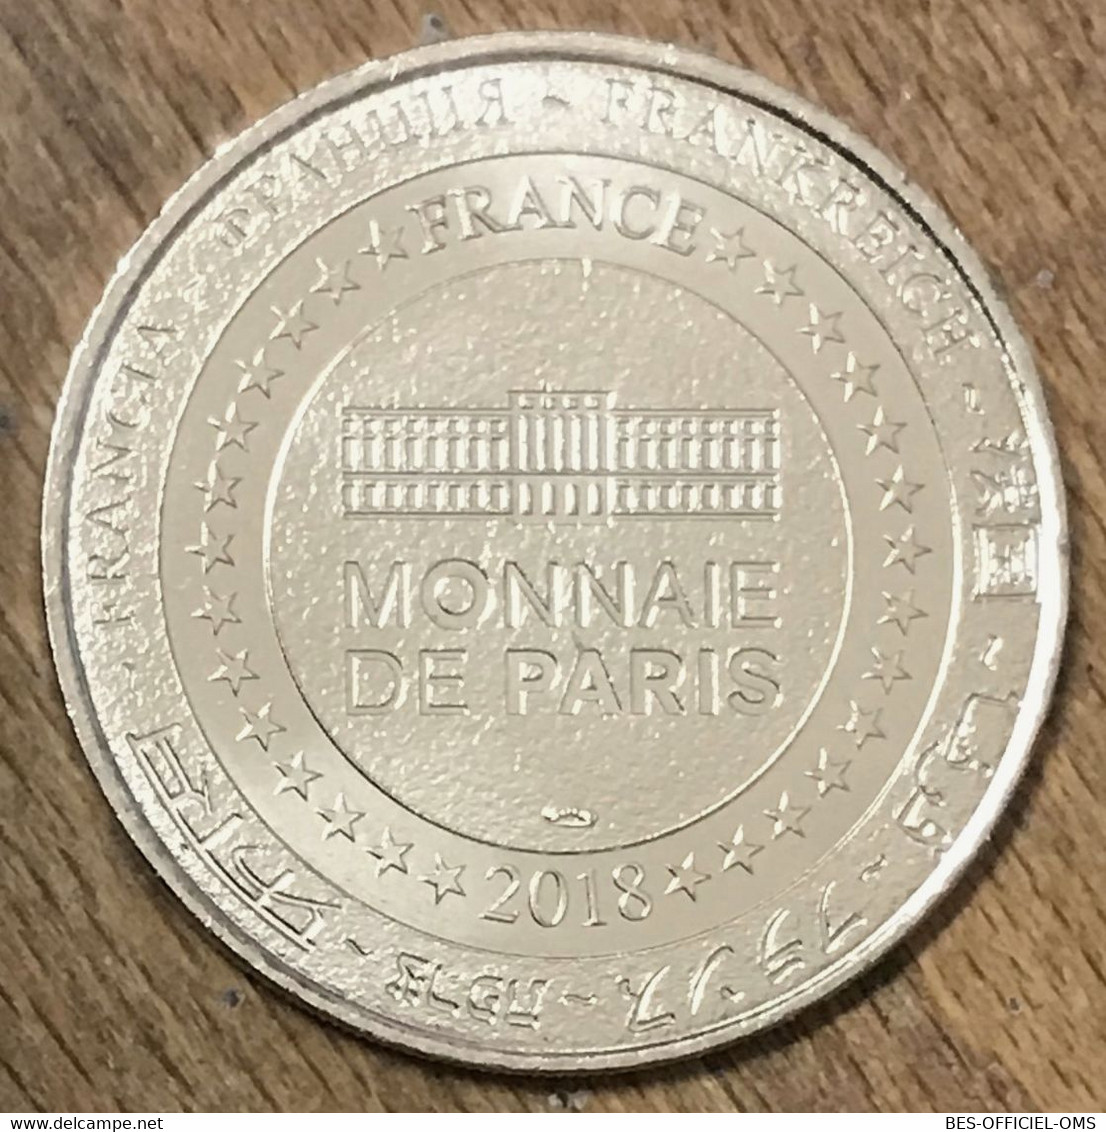 75006 MONNAIE DE PARIS 2018 CN INT MÉDAILLE SOUVENIR MONNAIE DE PARIS JETON TOURISTIQUE MEDALS COINS TOKENS - 2018